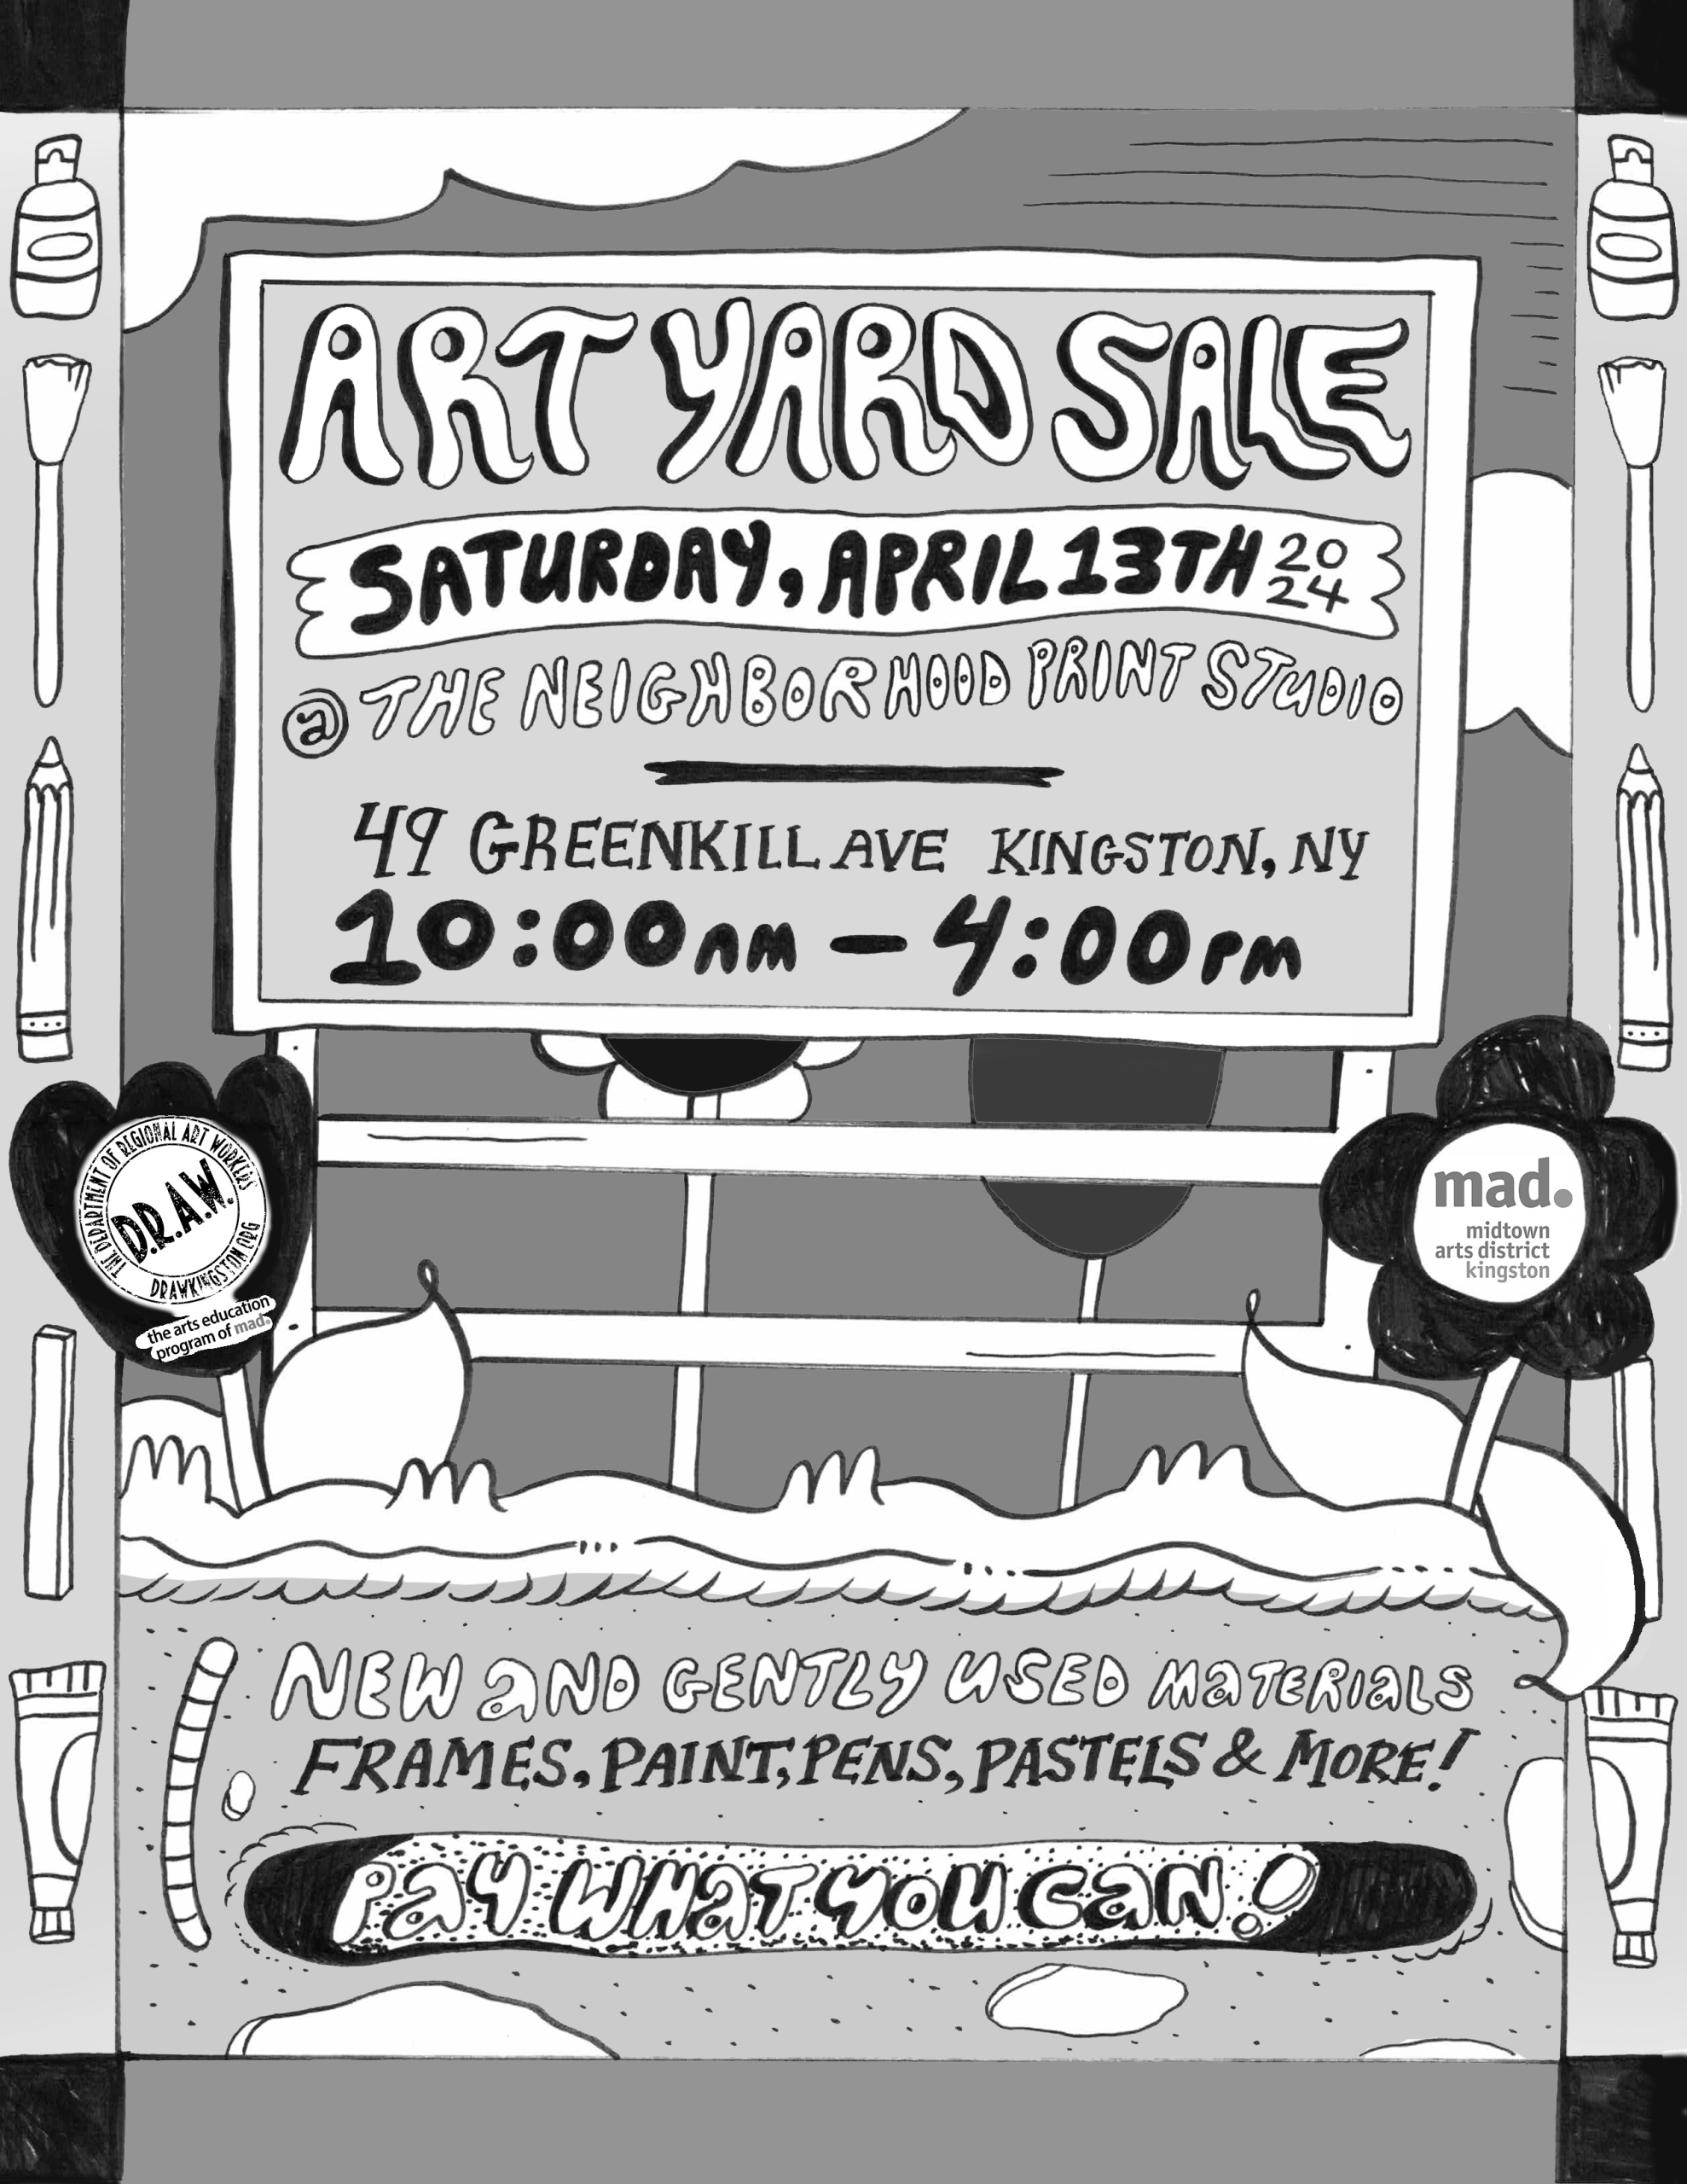 Art Yard Sale is April 13th